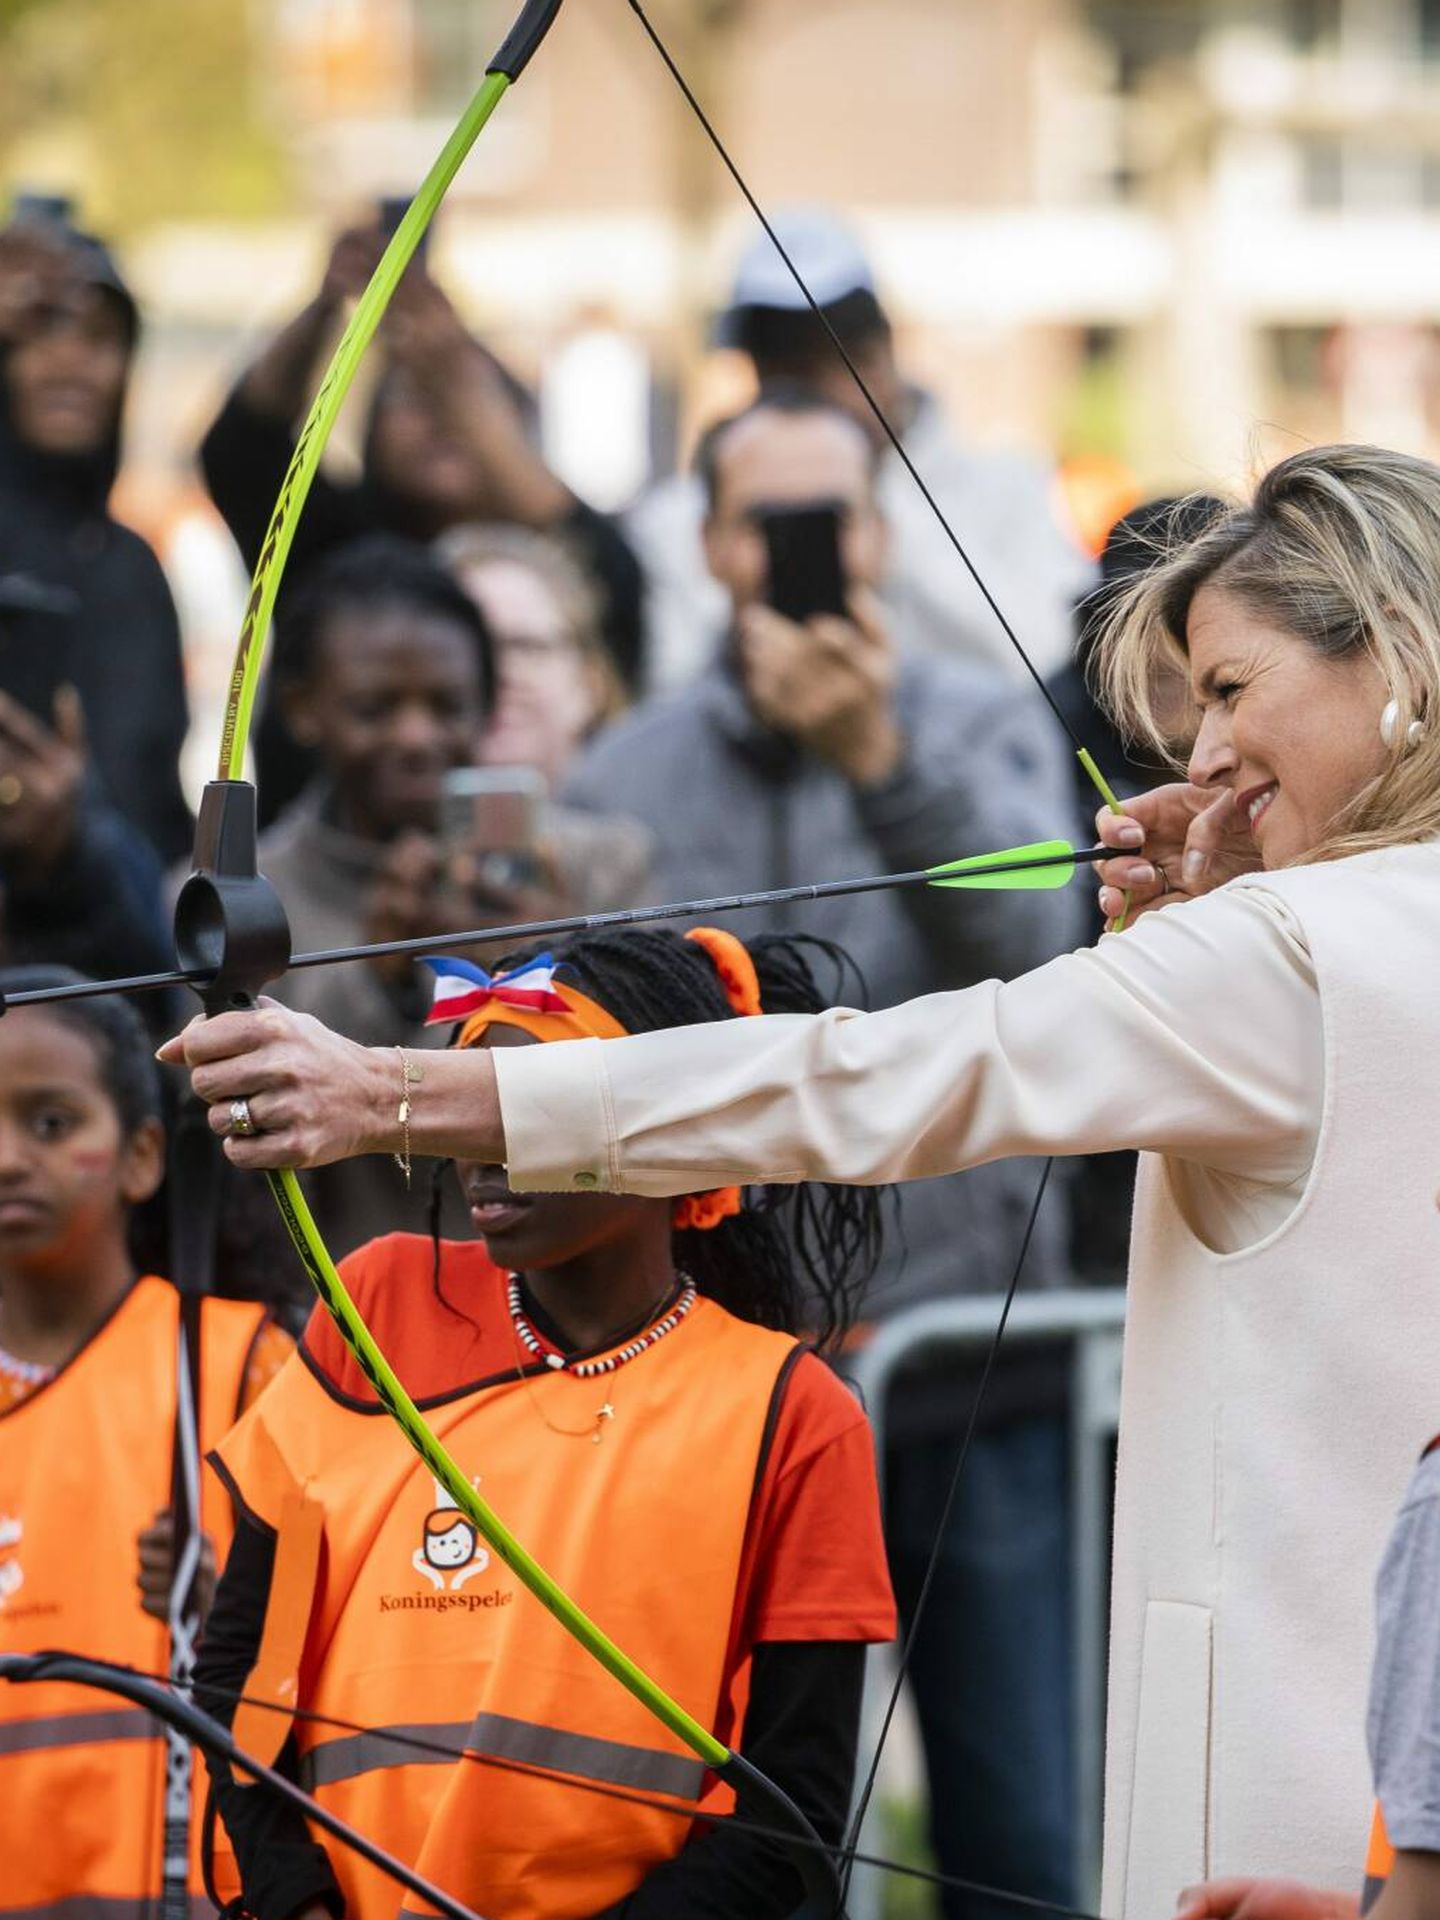 Máxima de Holanda dispara flechas en la inauguración de los Juegos del Rey. (Cordon Press)